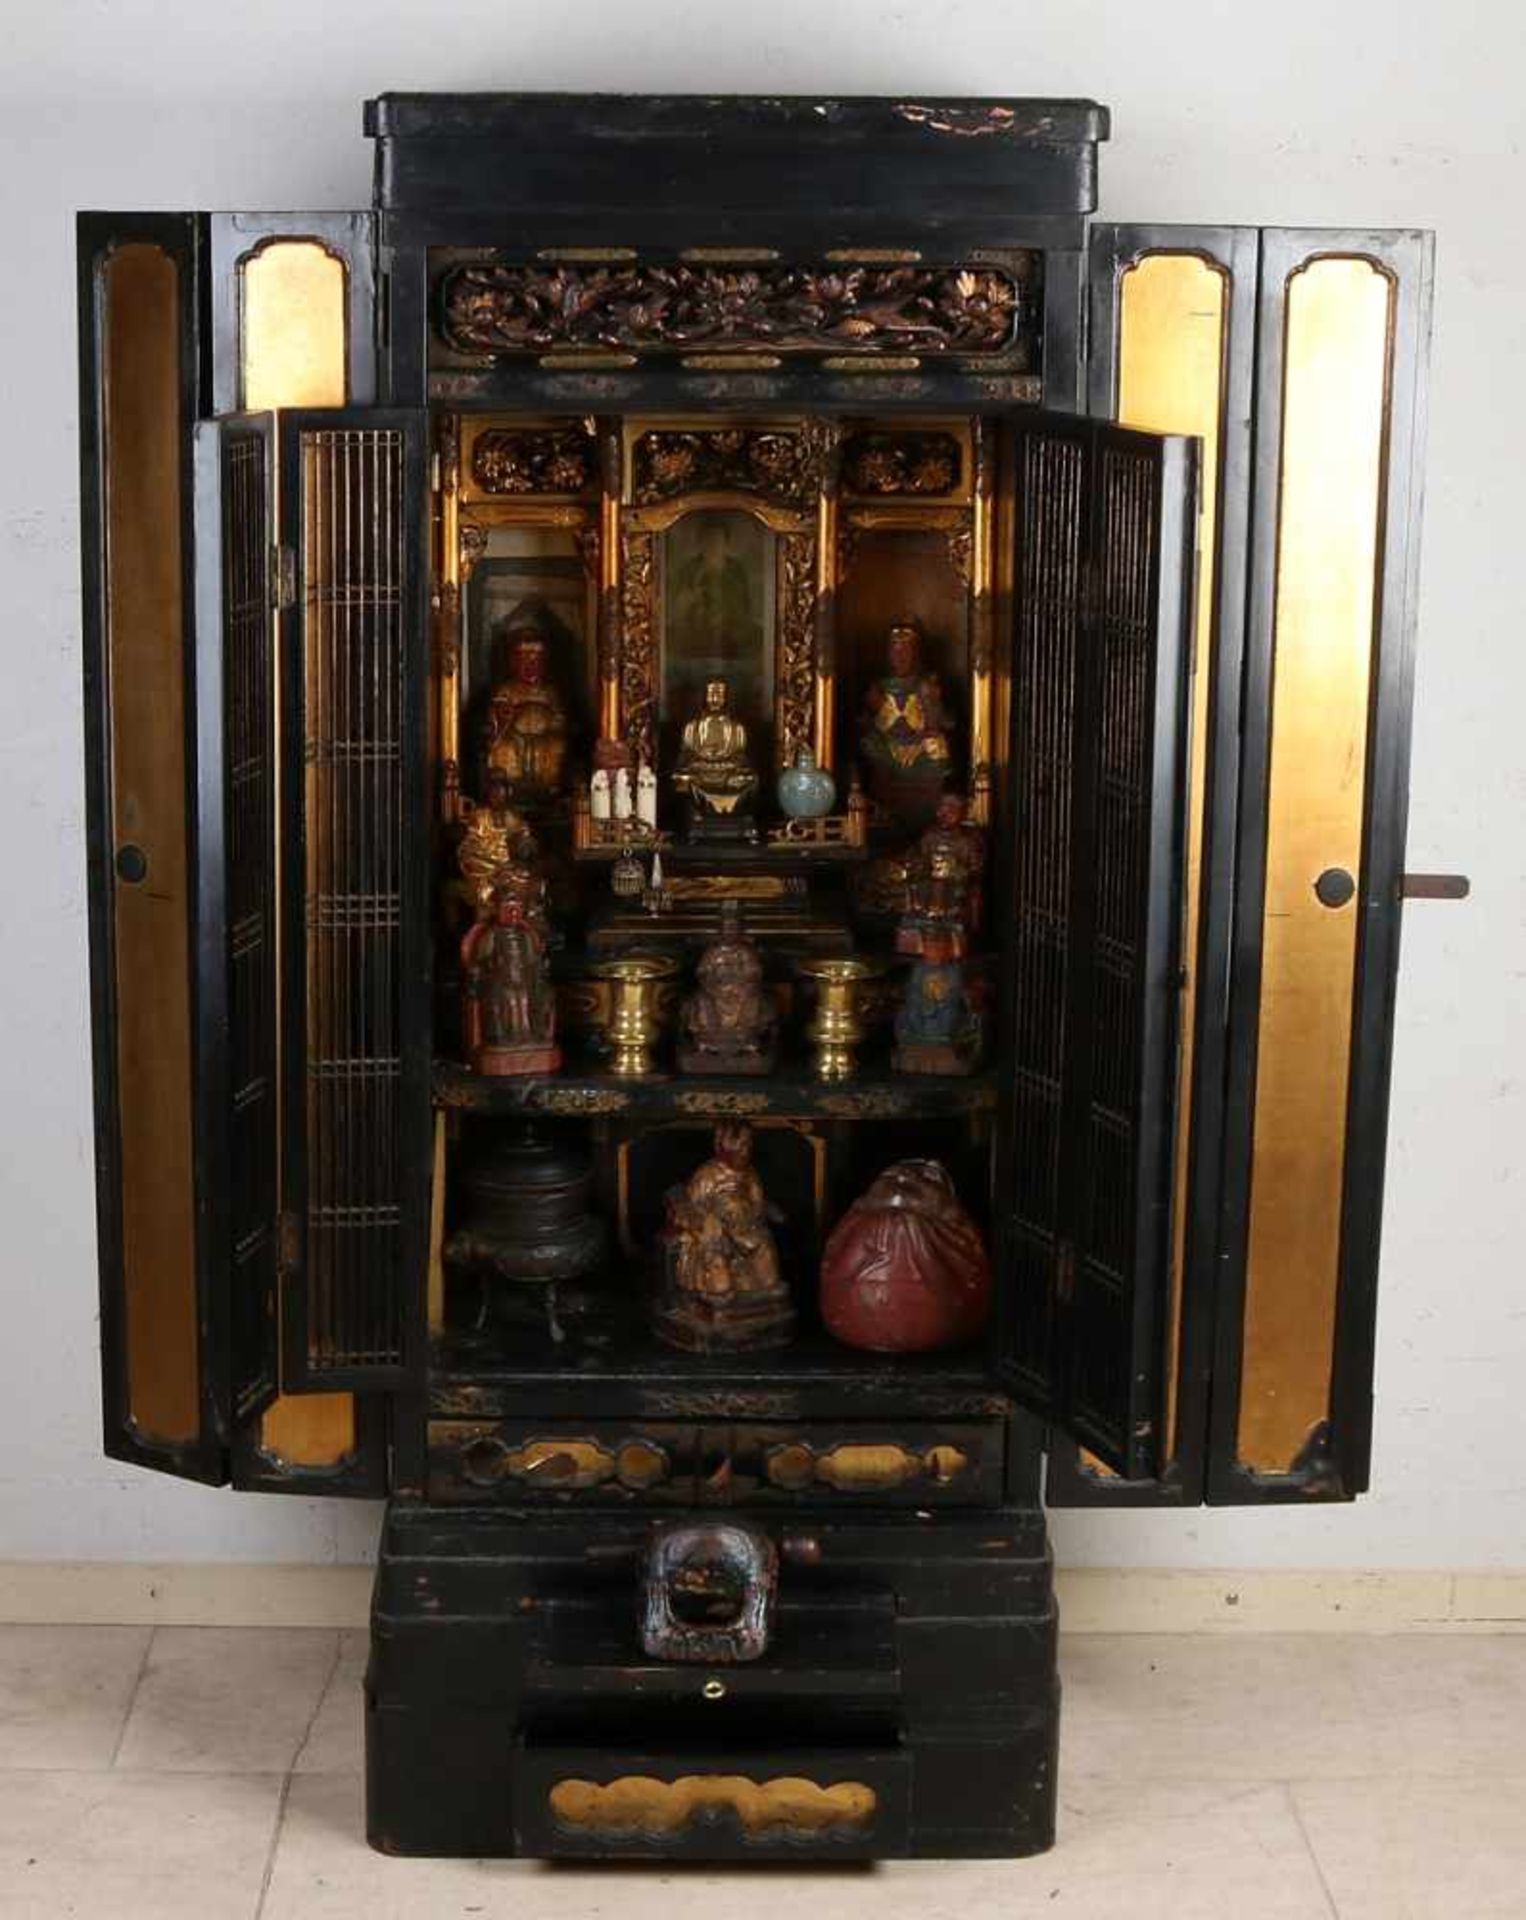 Hausaltar aus chinesischem Lack aus dem 19. Jahrhundert mit Inhalt. Altar hat Doppeltüren, zwei